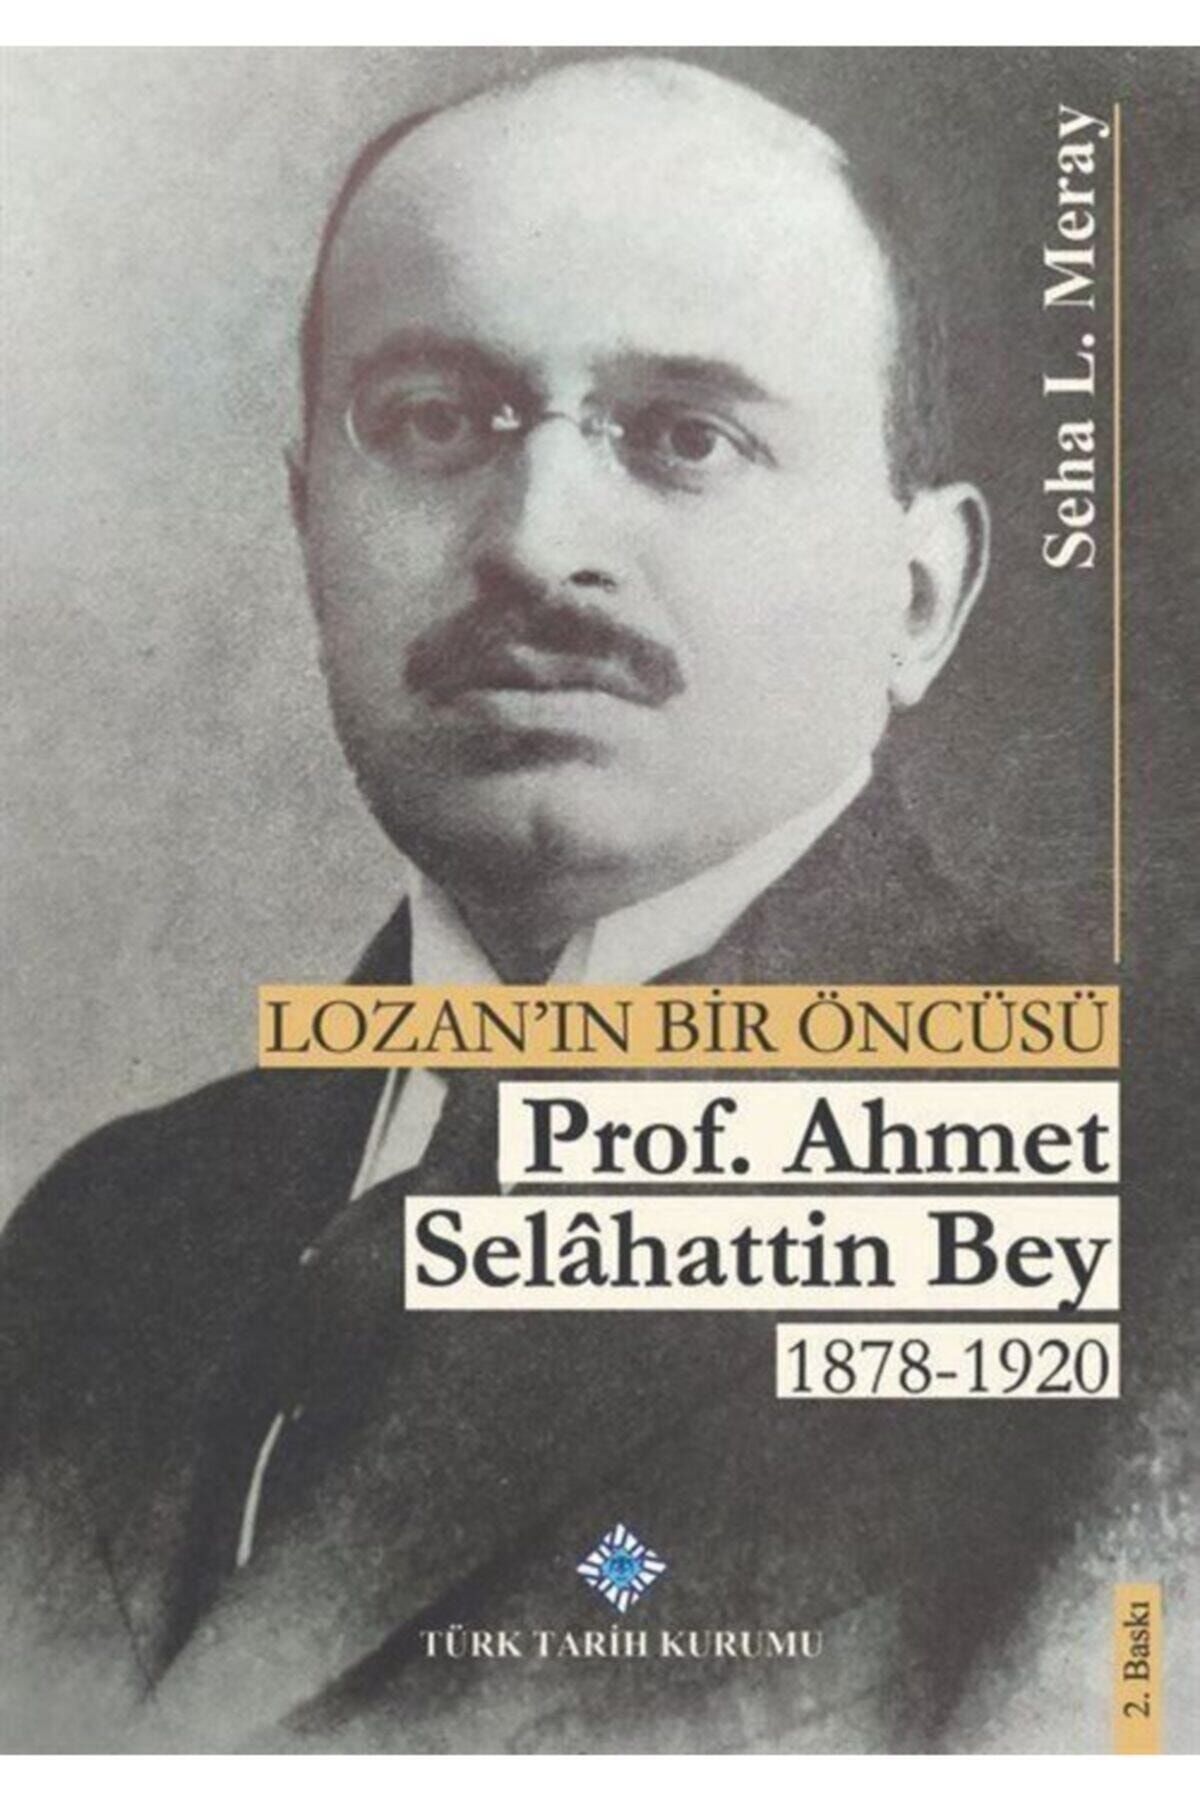 Türk Tarih Kurumu Yayınları Lozan'ın Bir Öncüsü Prof. Dr. Ahmet Selahattin Bey 1878-1920